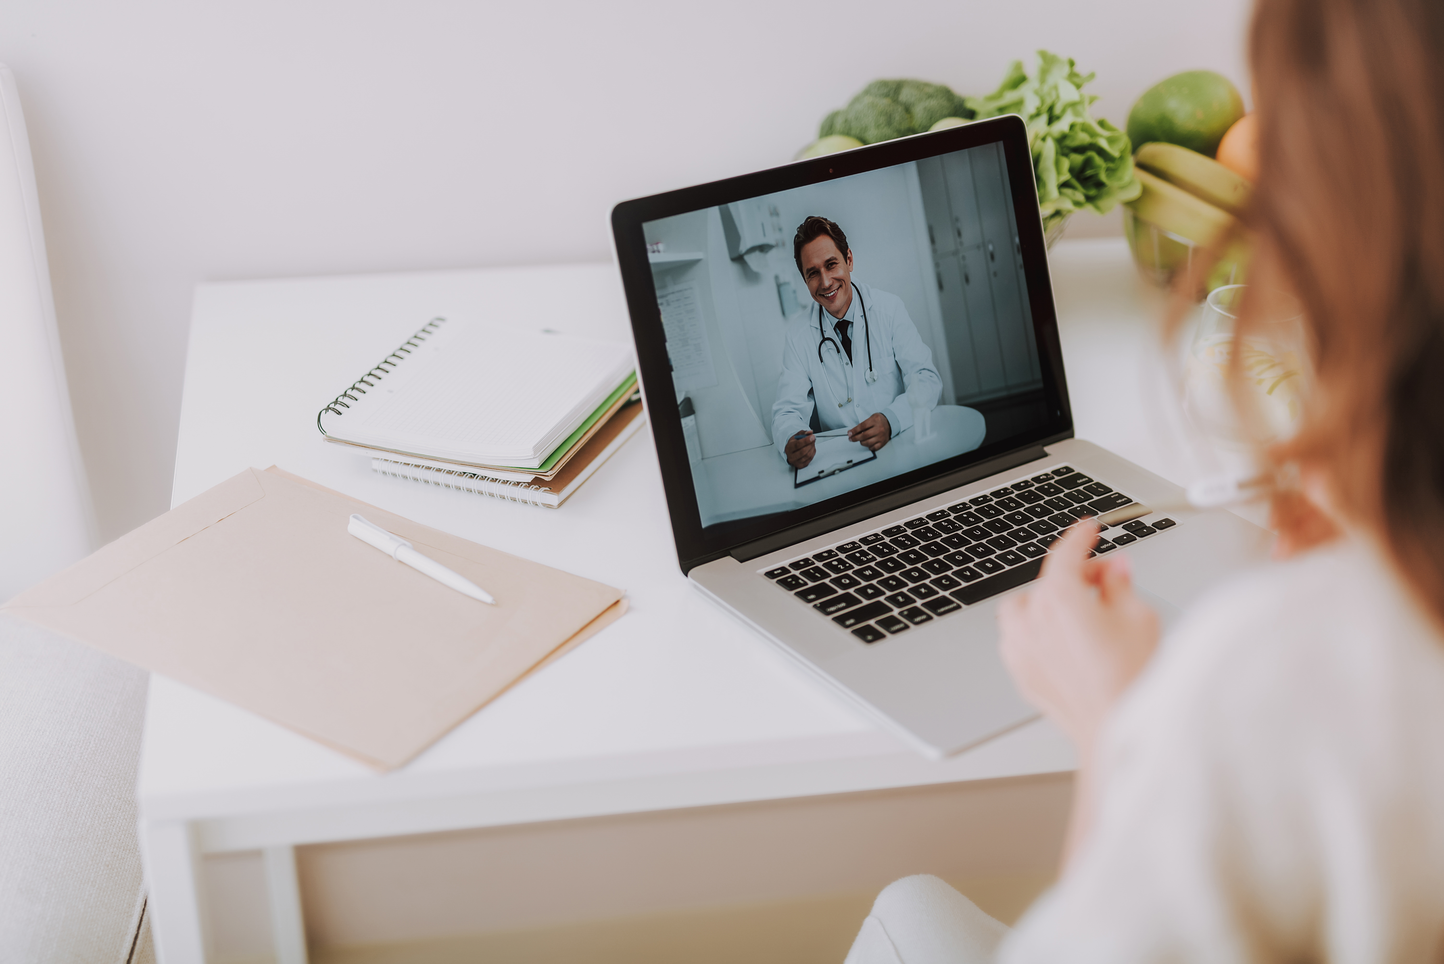 Encuentro entre médico y paciente a través de una visita virtual